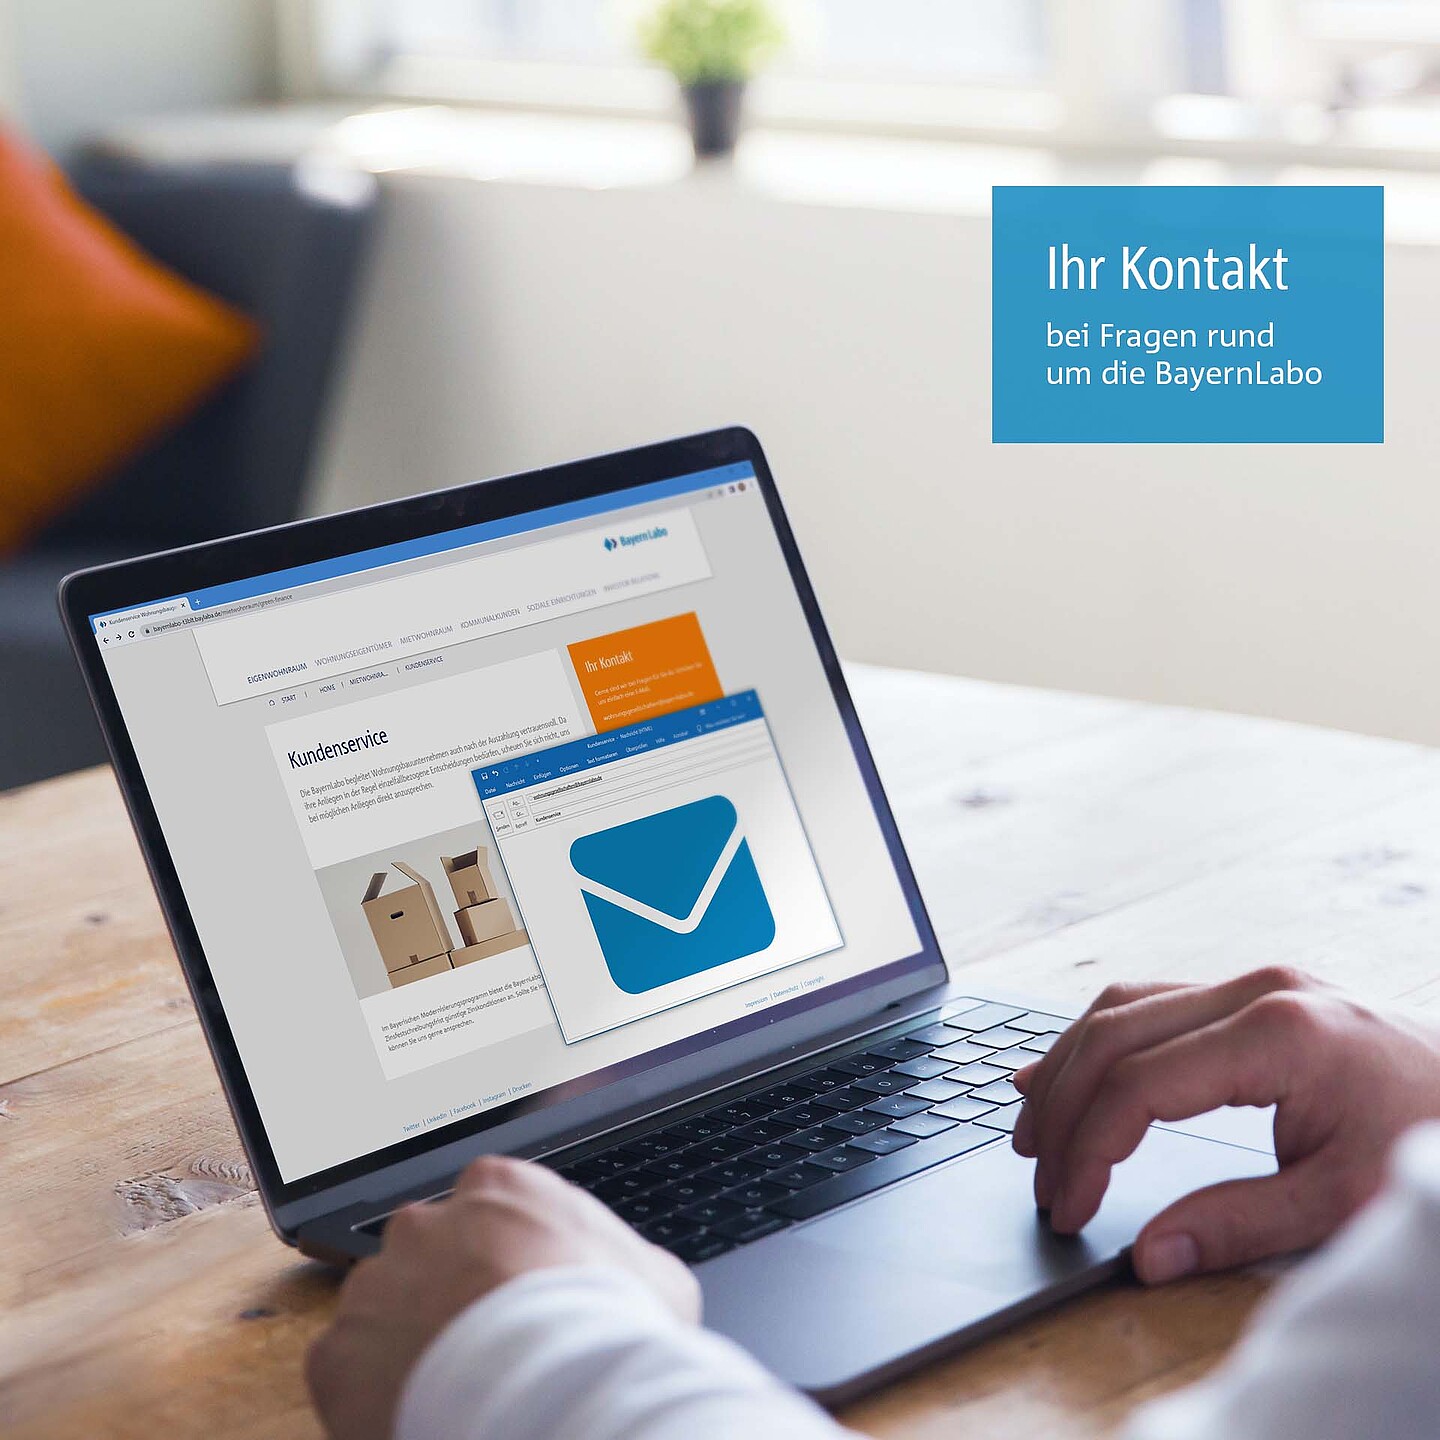 Laptop mit E-Mail Postfach und einer Nachricht der BayernLabo auf eine Kundenservice-Anfrage.